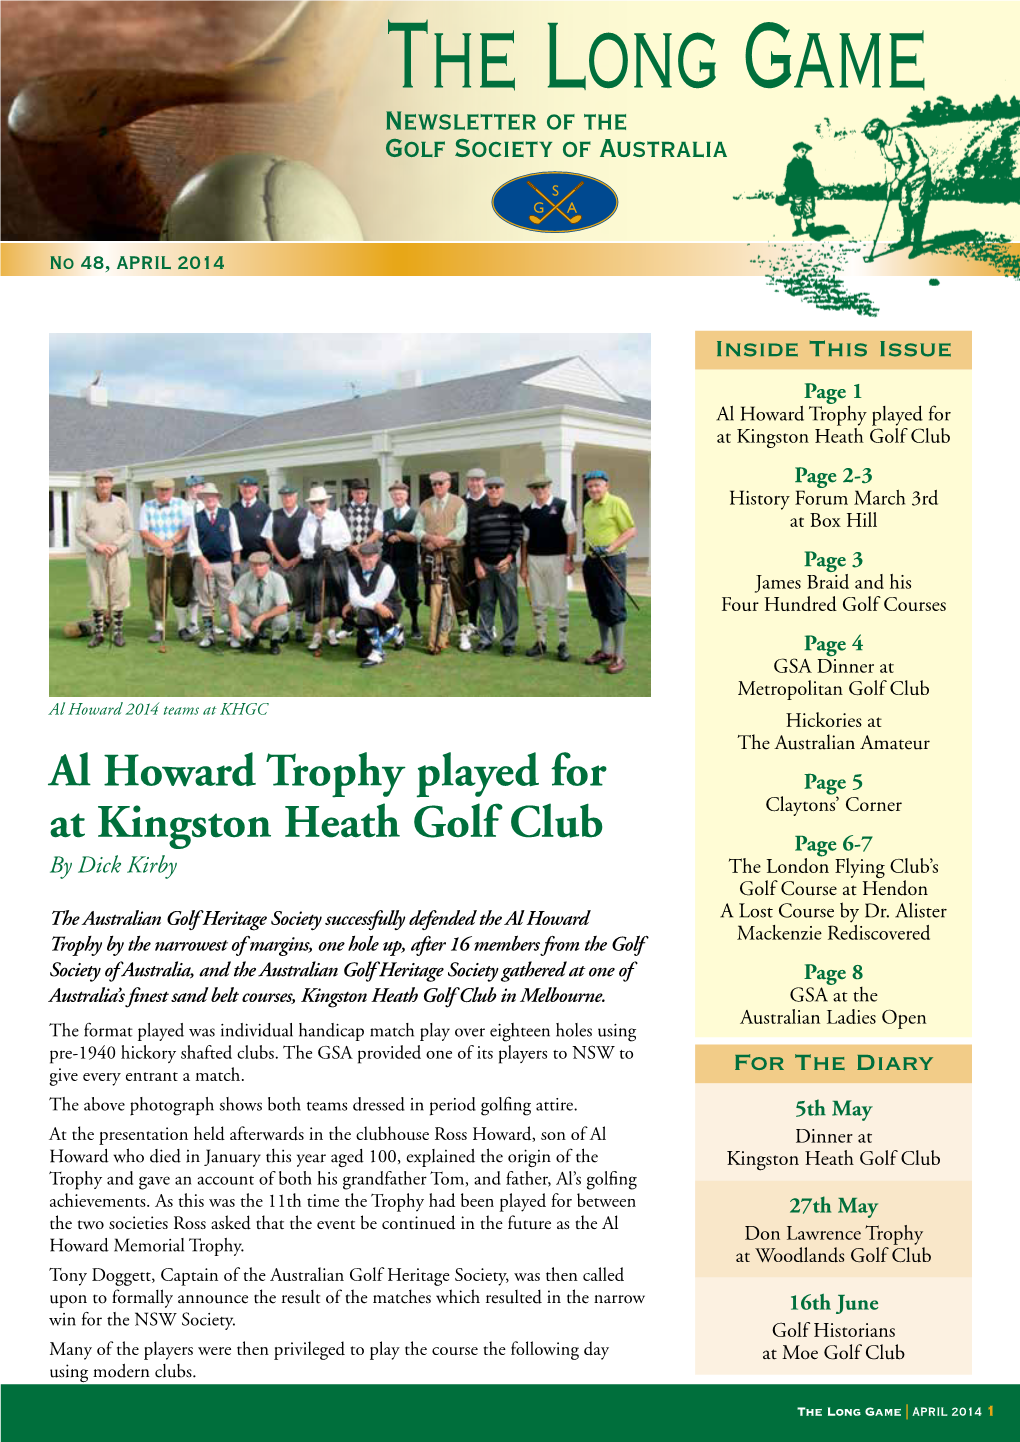 Al Howard Trophy Played for at Kingston Heath Golf Club